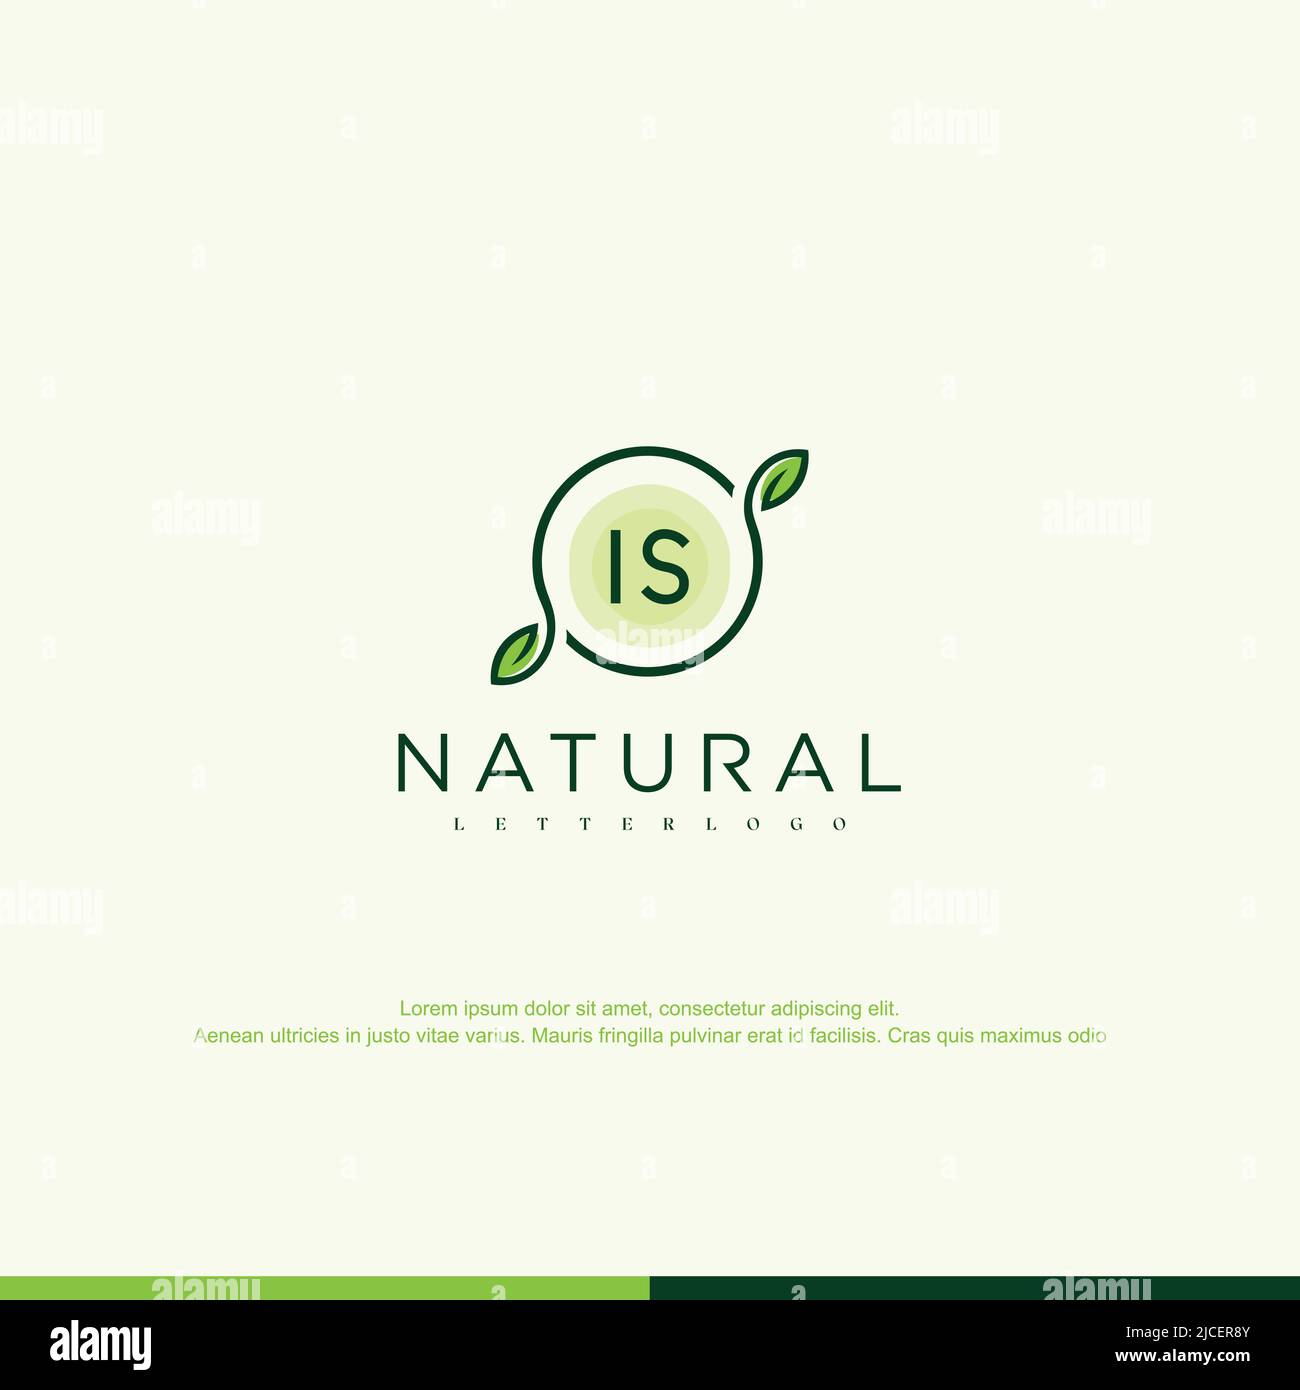 IST der ursprüngliche Vektor der Vorlage für ein natürliches Logo Stock Vektor